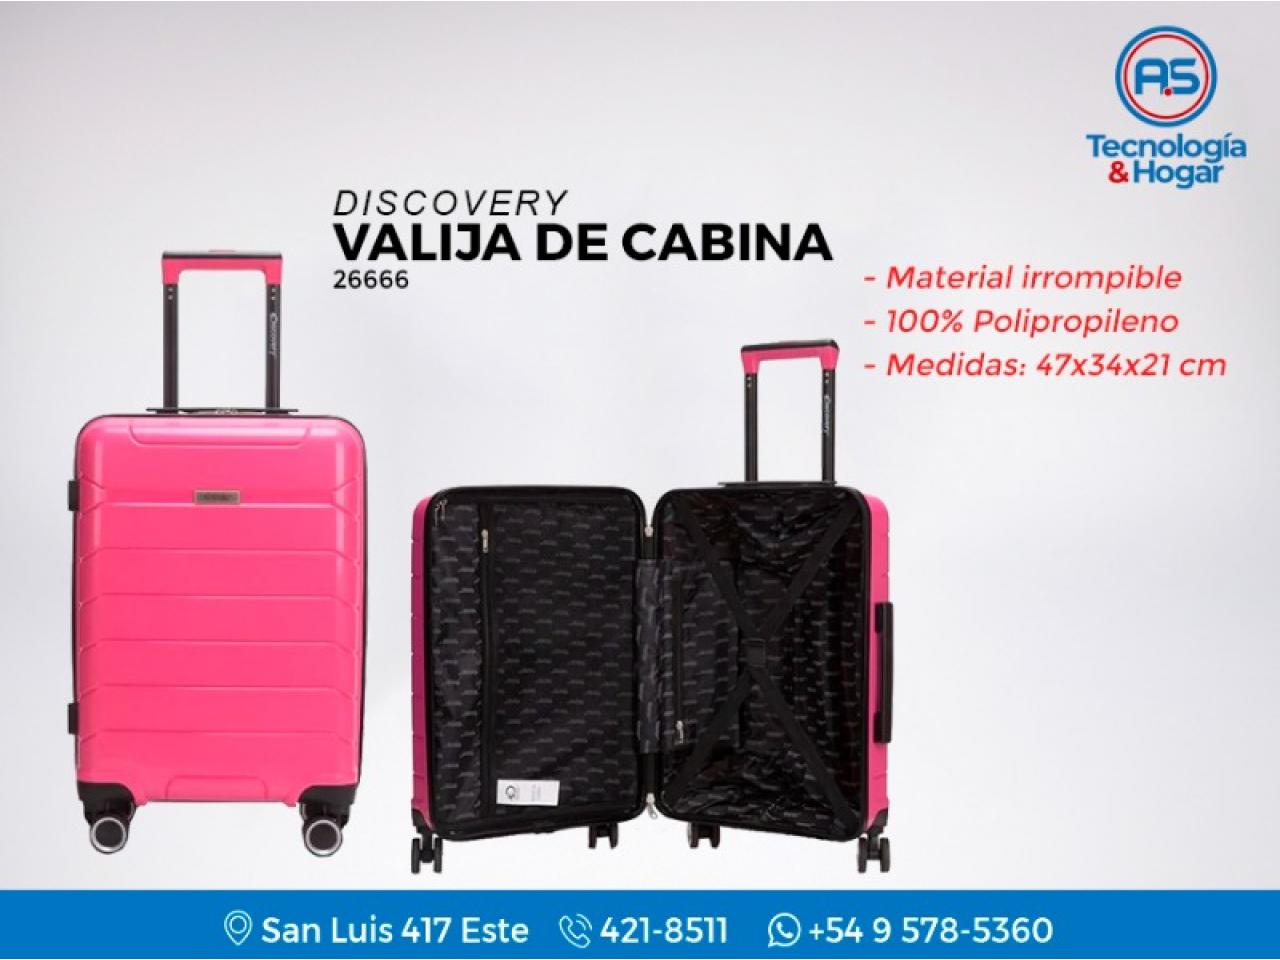 Valija Carry On De Cabina Discovery 26666 - Material 100% Irrompible - Diseño Súper Moderno - Nuevos - Comprá en San